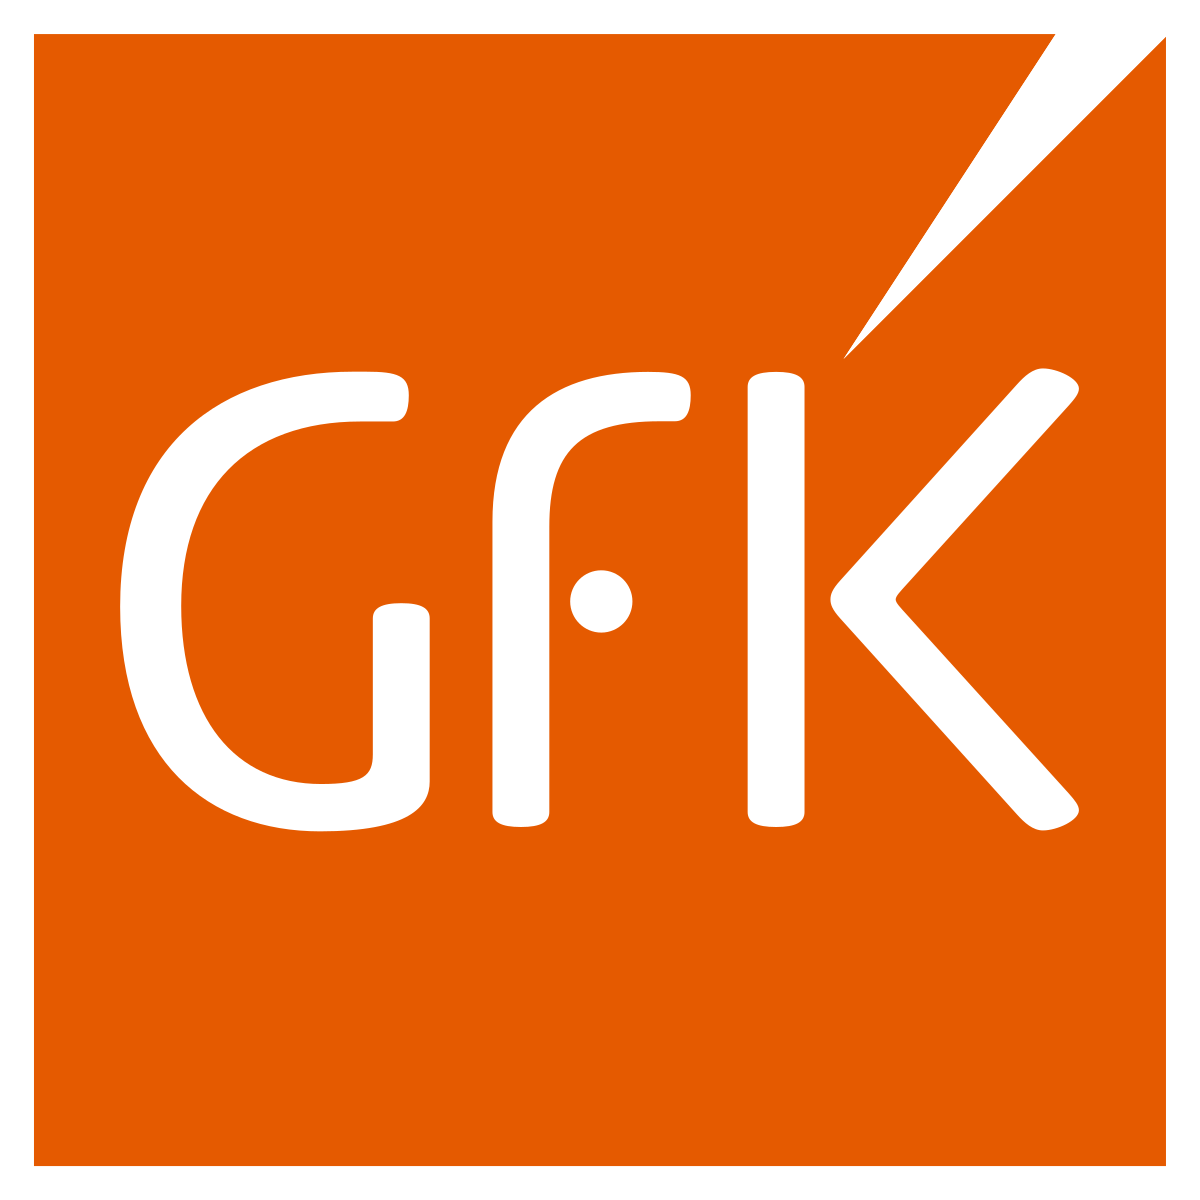 GFK logo